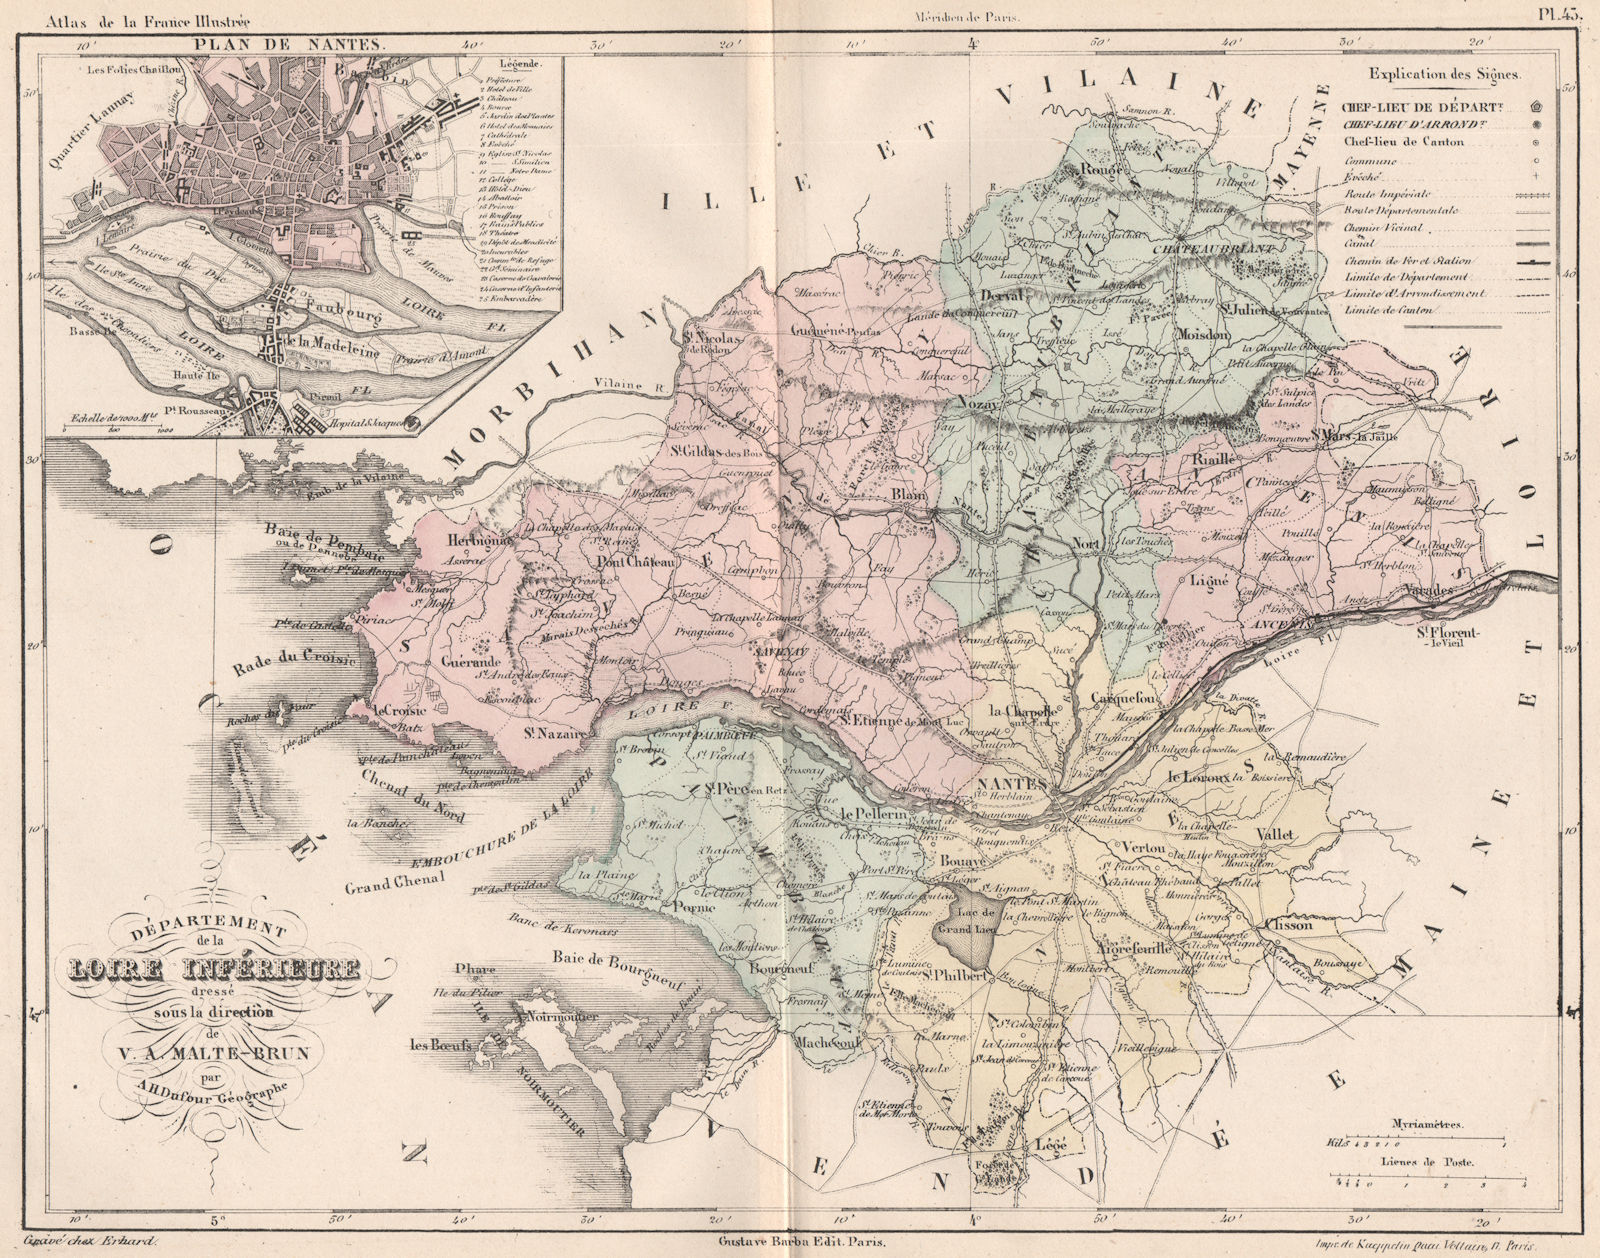 LOIRE-ATLANTIQUE.Département.Loire-Atlantique.Nantes plan.MALTE-BRUN 1852 map